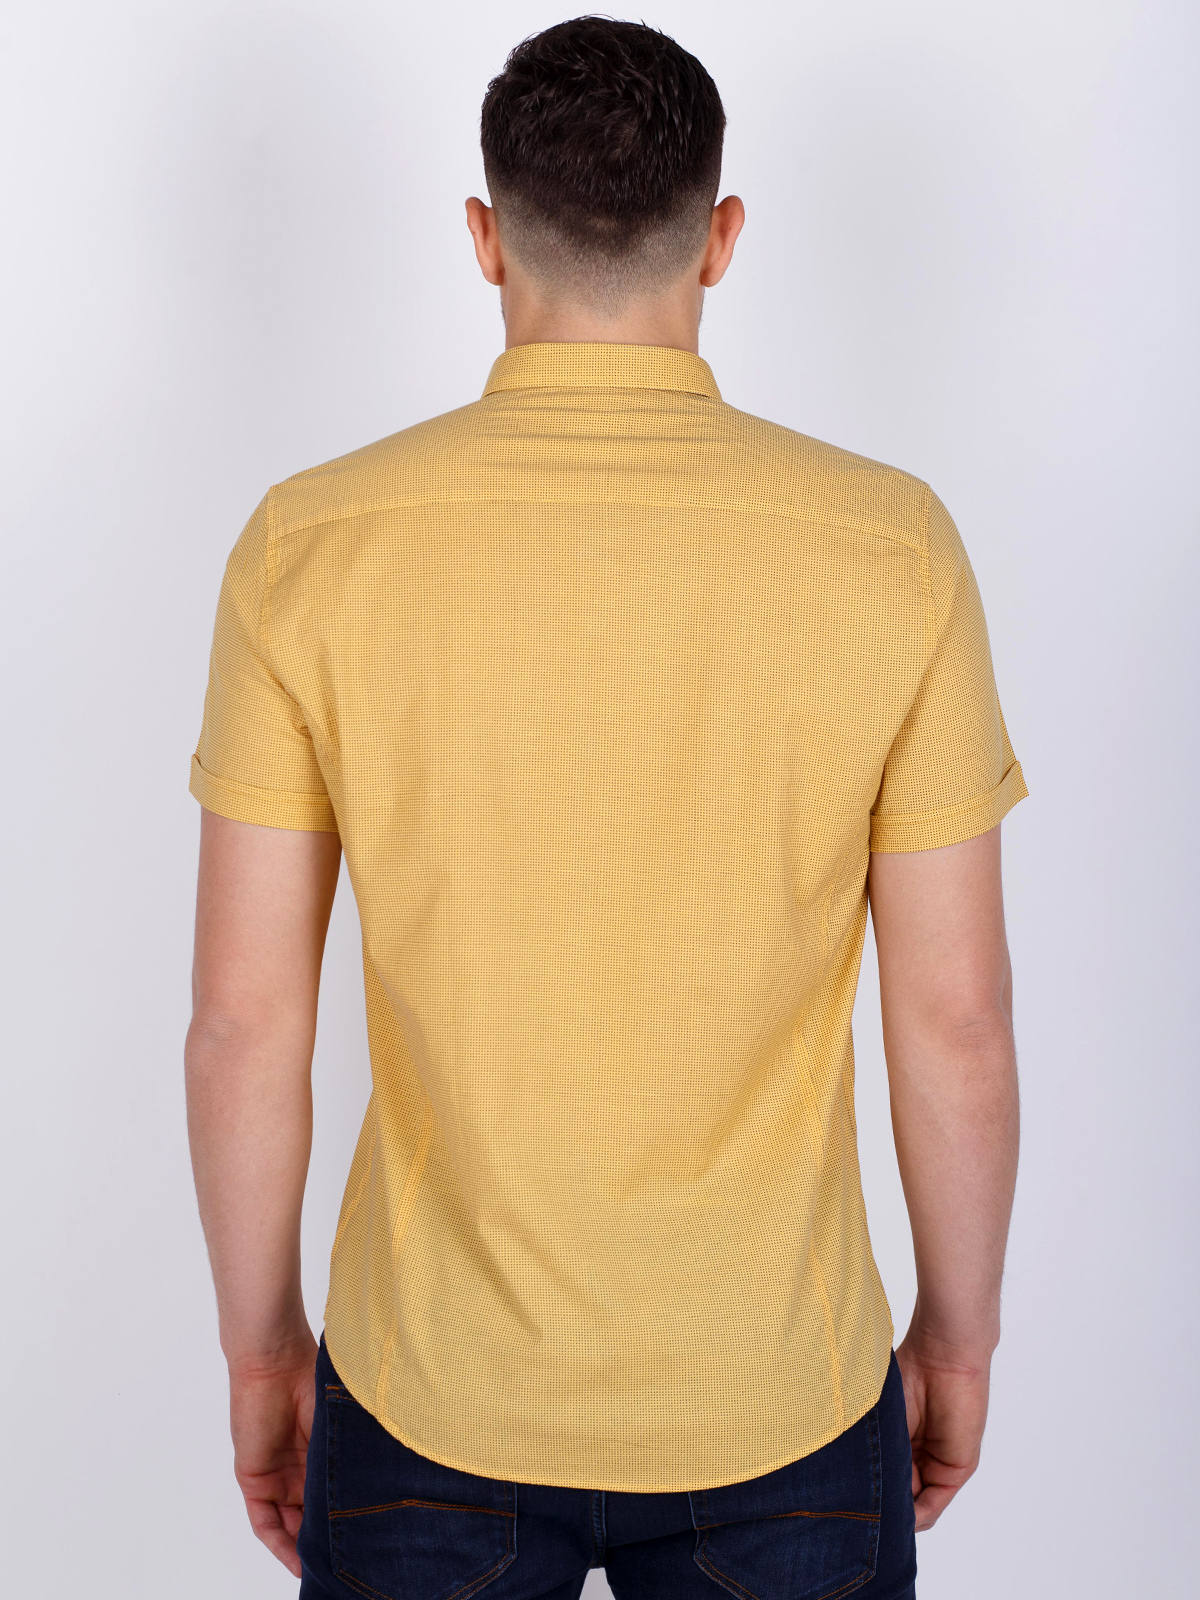 Κίτρινο πουκάμισο με ψιλά γράμματα - 80221 € 21.93 img4